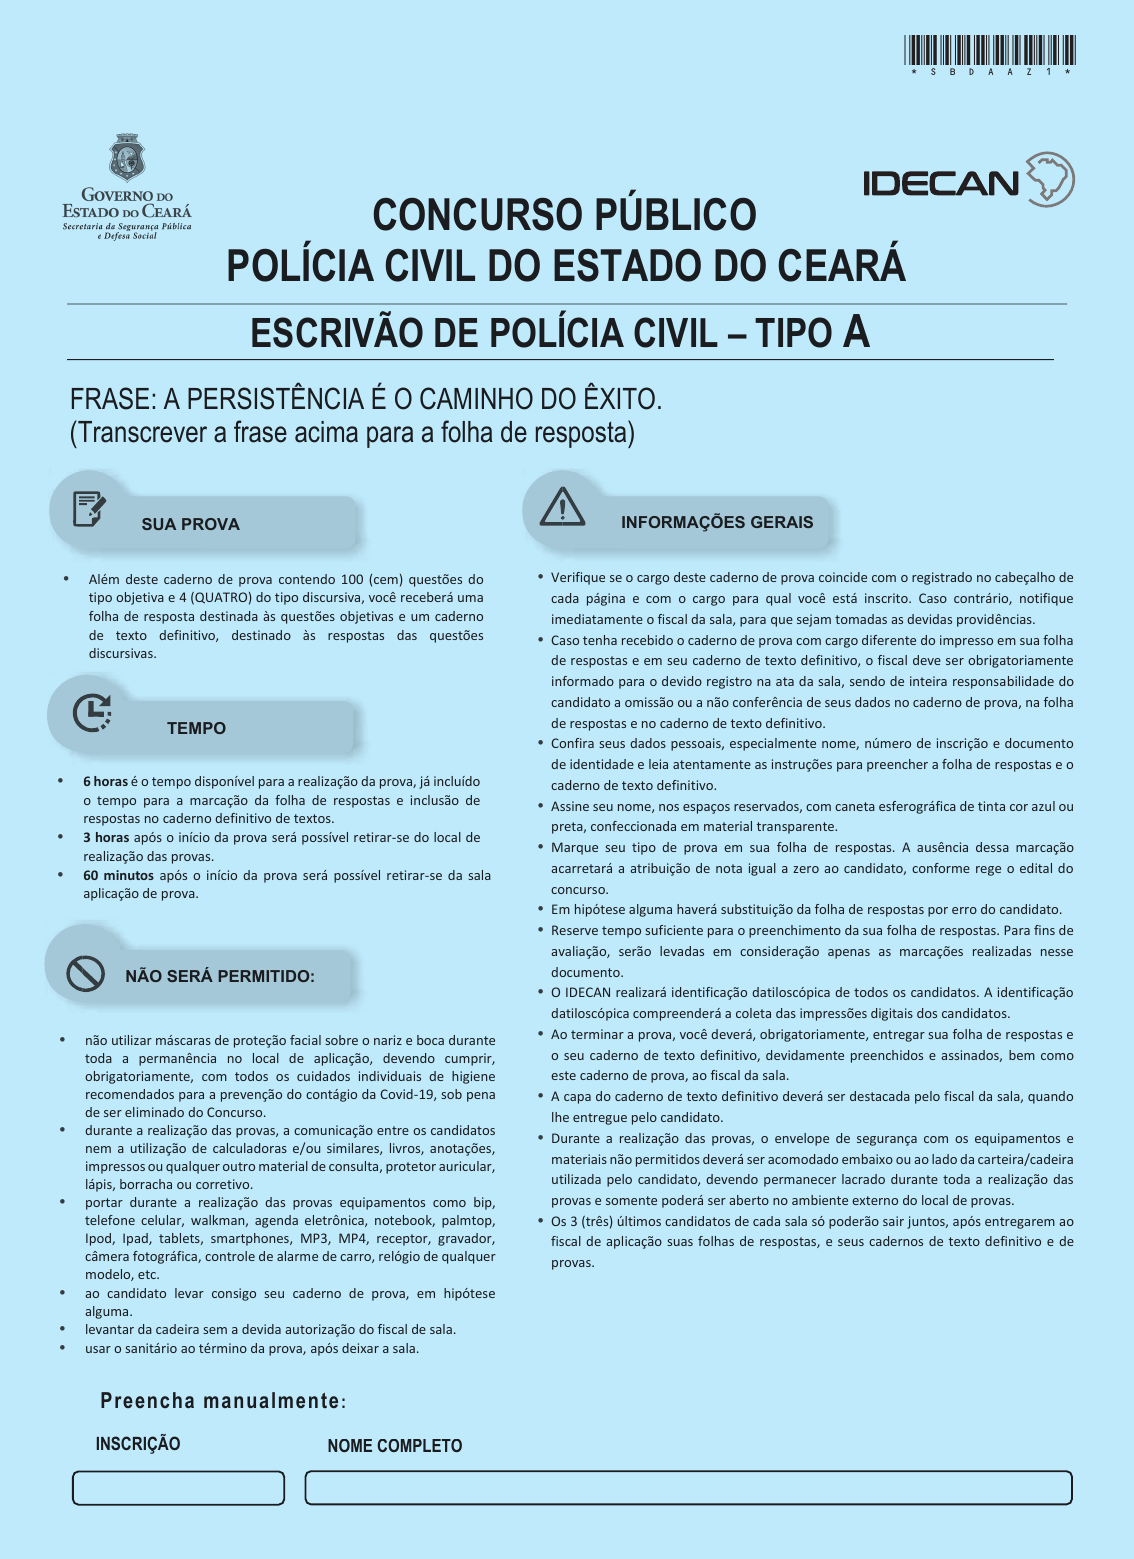 Jogo do Bicho é autorizado a funcionar pela Justiça do Ceará